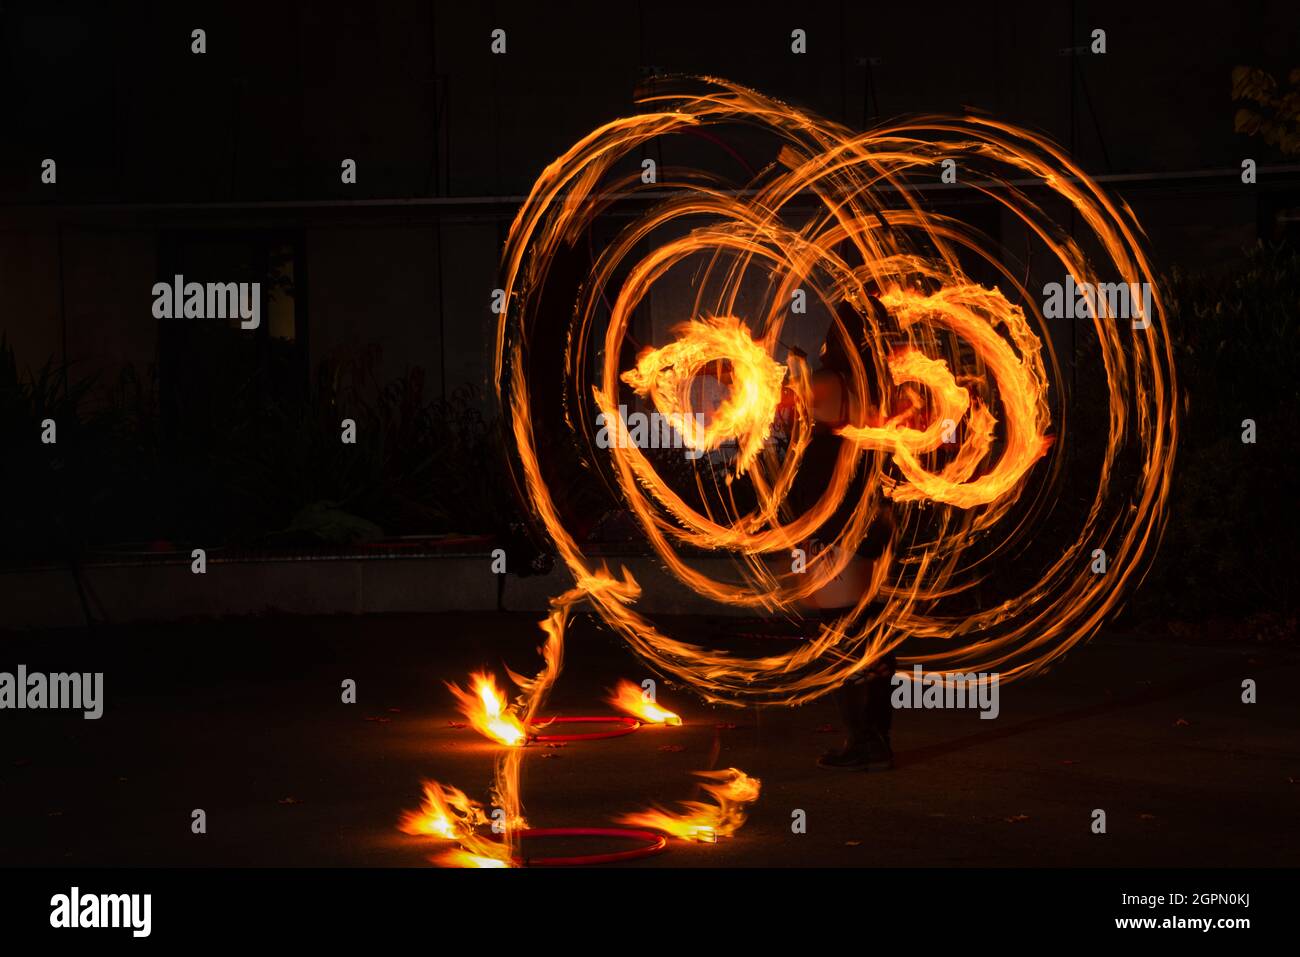 Straßenkünstler jongliert mit brennendem Hula Hoop bei einer Feueraufführung. Langzeitbelichtung Bild der abstrakten Feuer Licht Malerei. Stockfoto